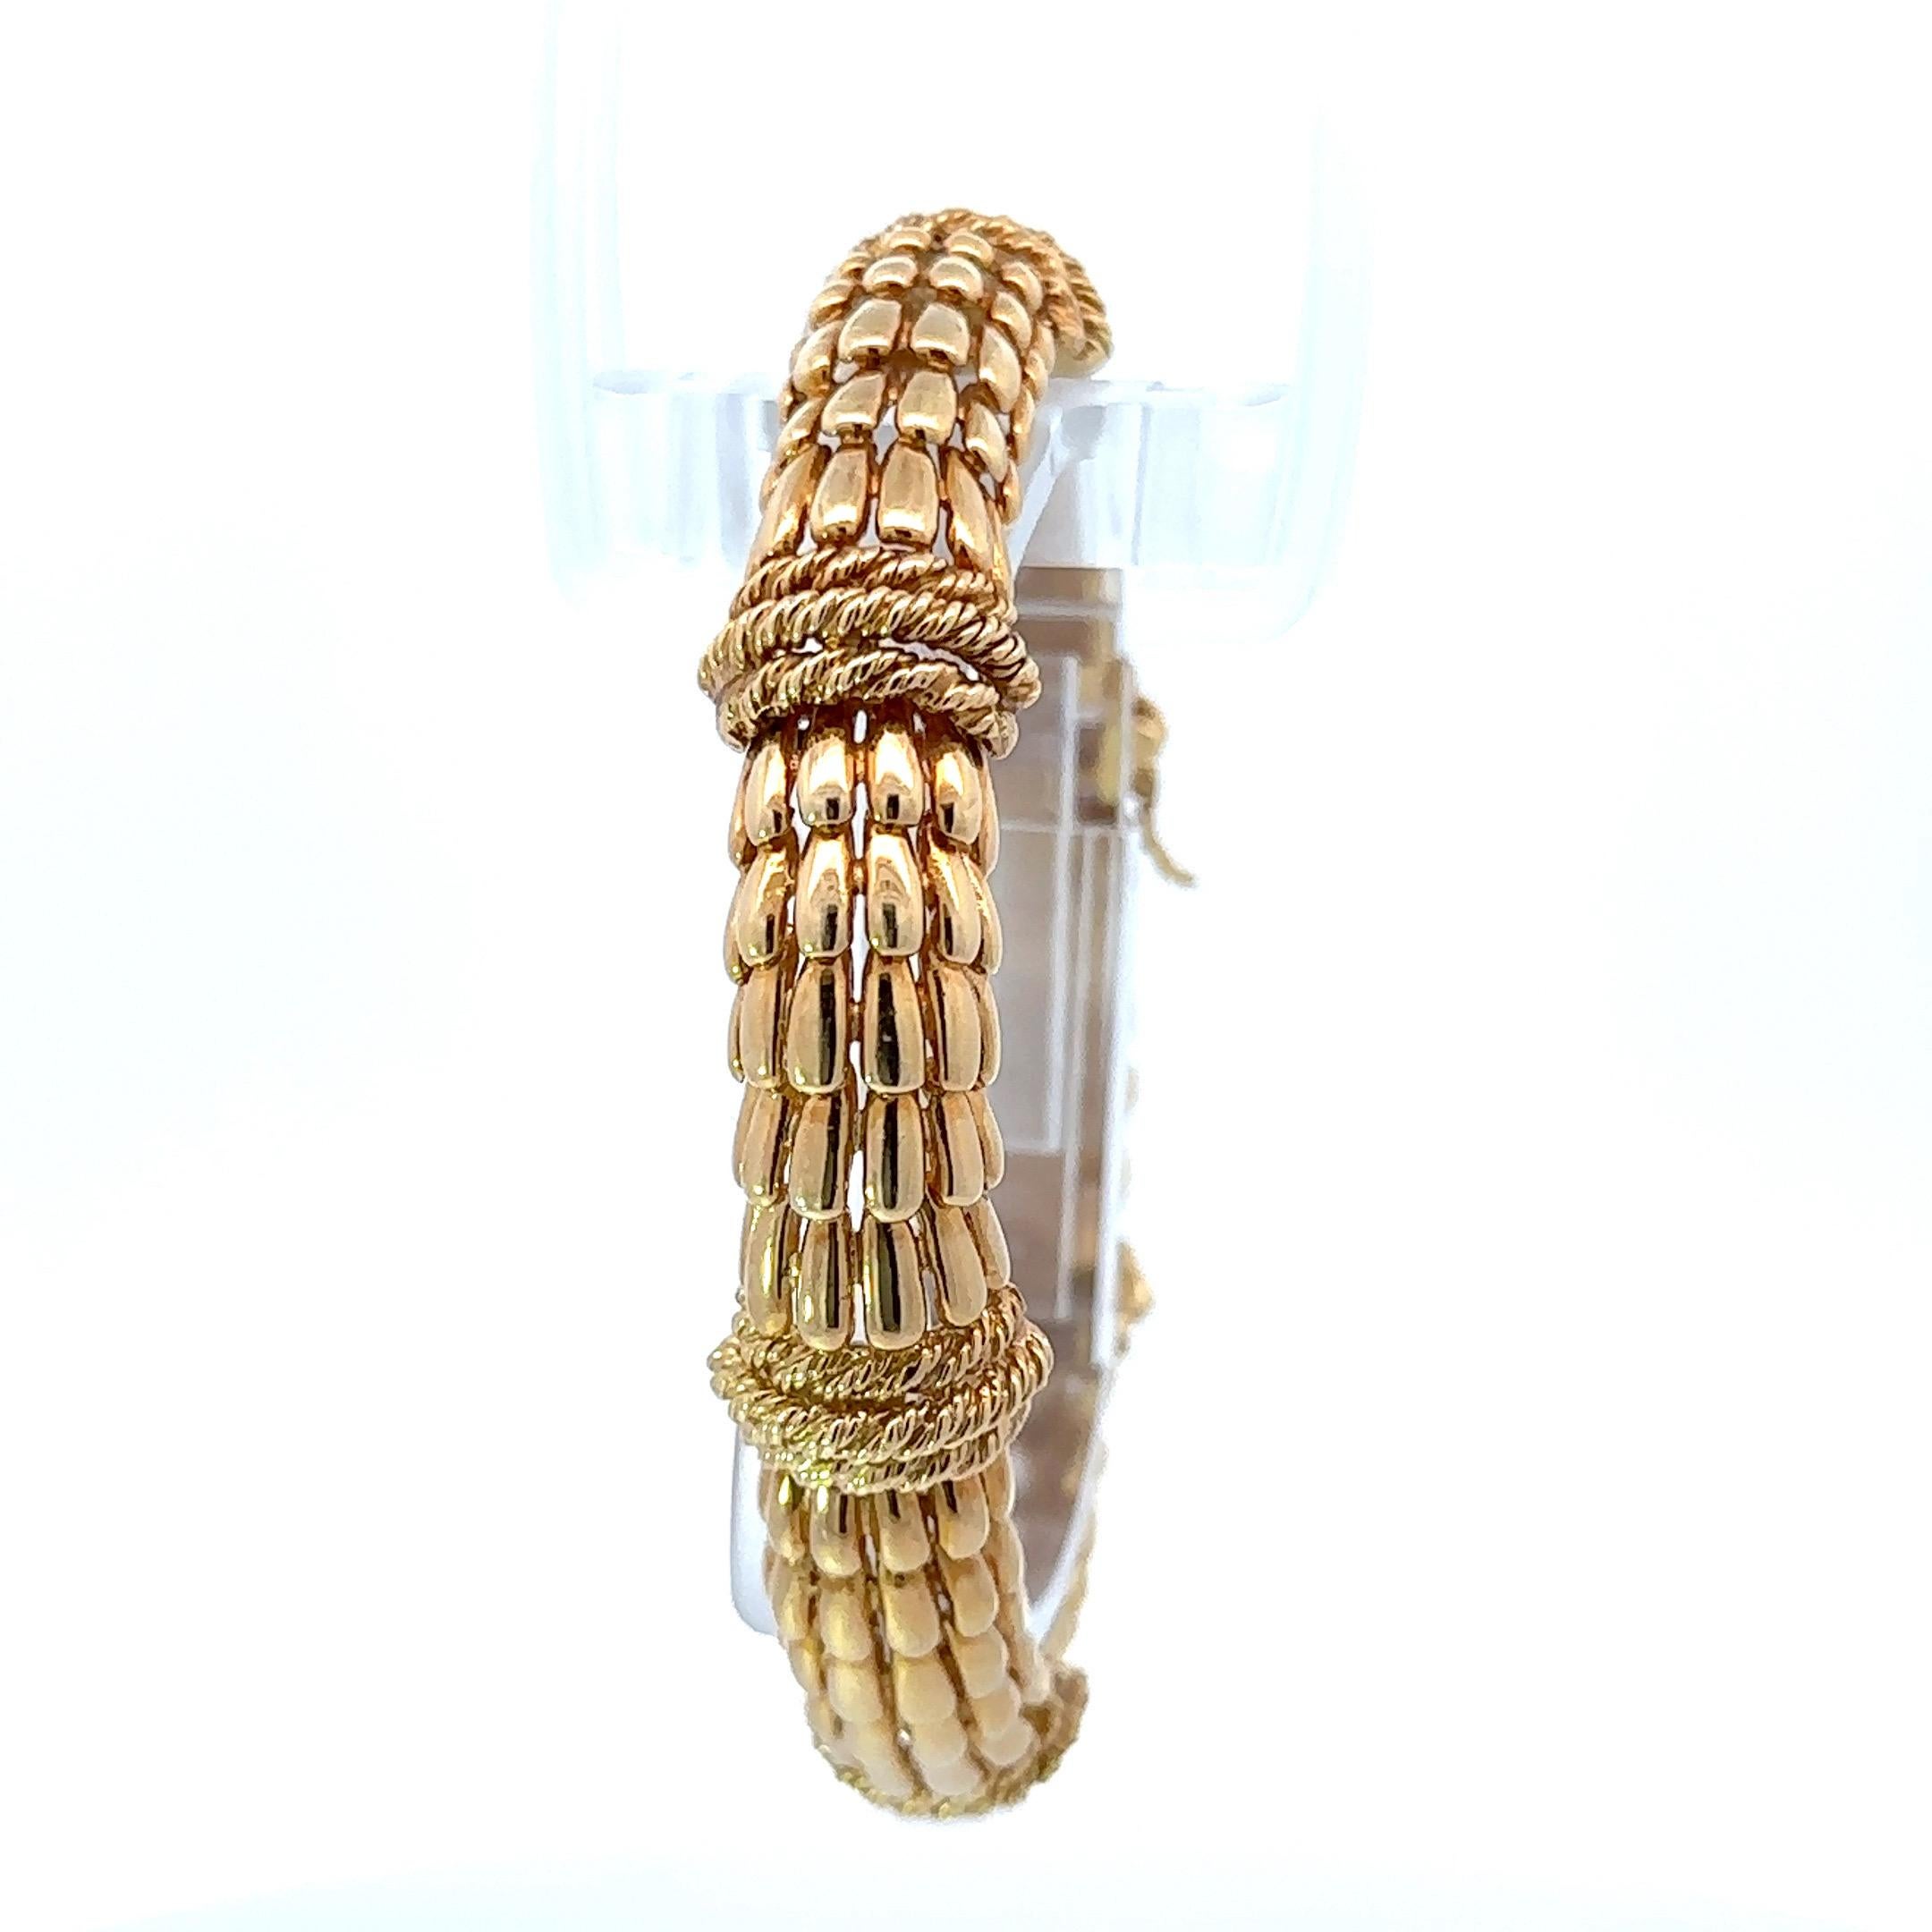 
Découvrez la beauté intemporelle de cet exquis bracelet David Webb, véritable incarnation de l'élégance vintage des années 1970. Réalisée en or jaune 18 carats, cette magnifique pièce présente un fascinant motif en écailles de poisson, rehaussé